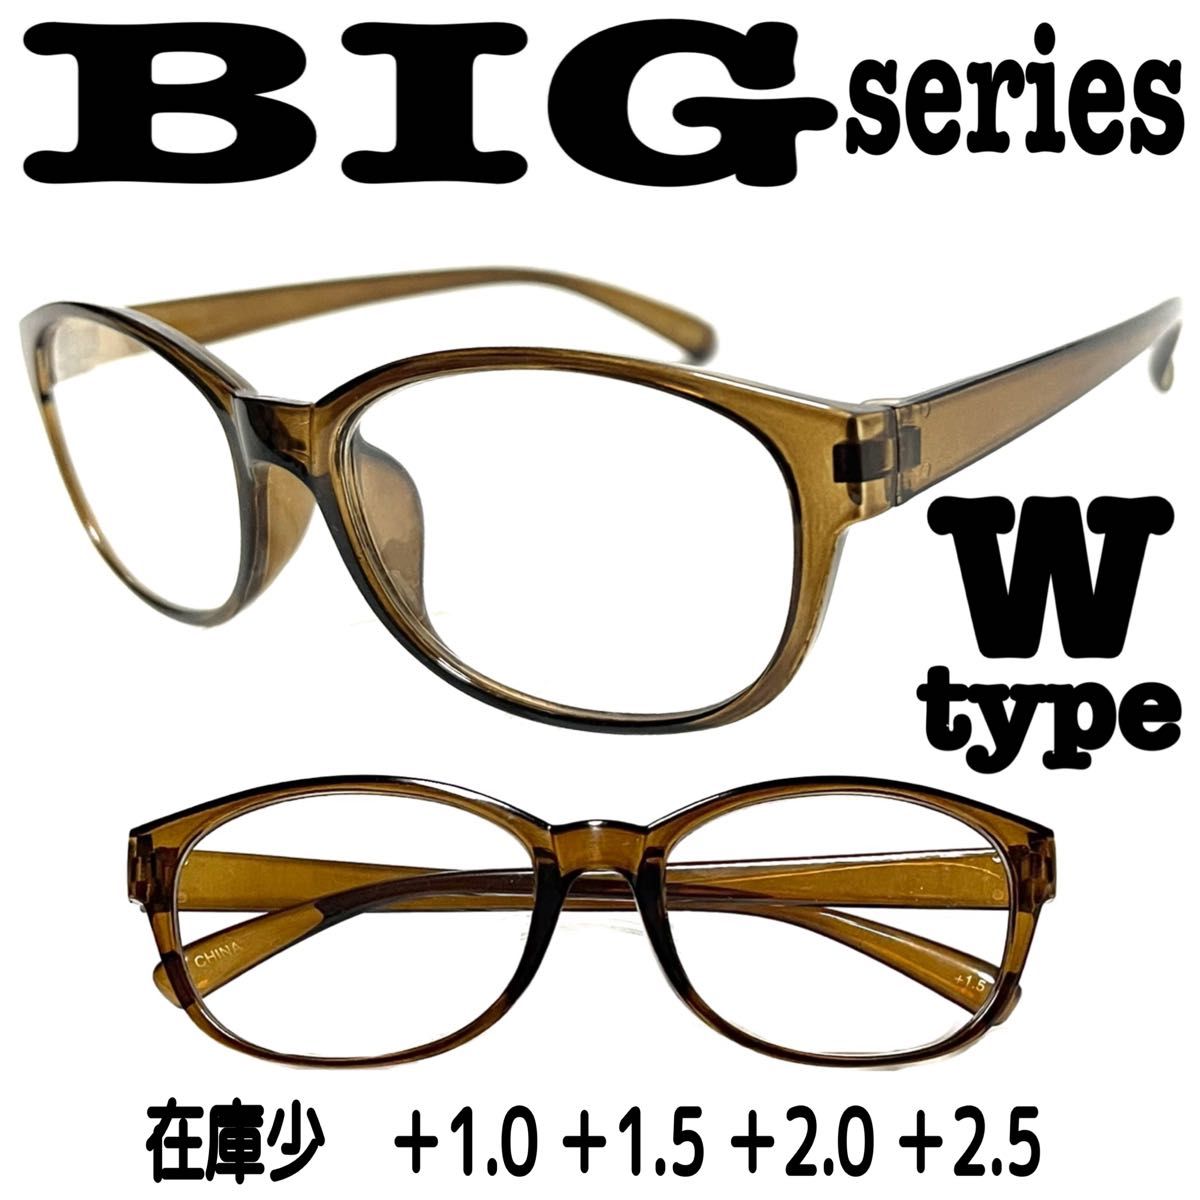 ＋2.0 CW type ビックBIG 老眼鏡　大きめ　即出荷　ザ老眼鏡